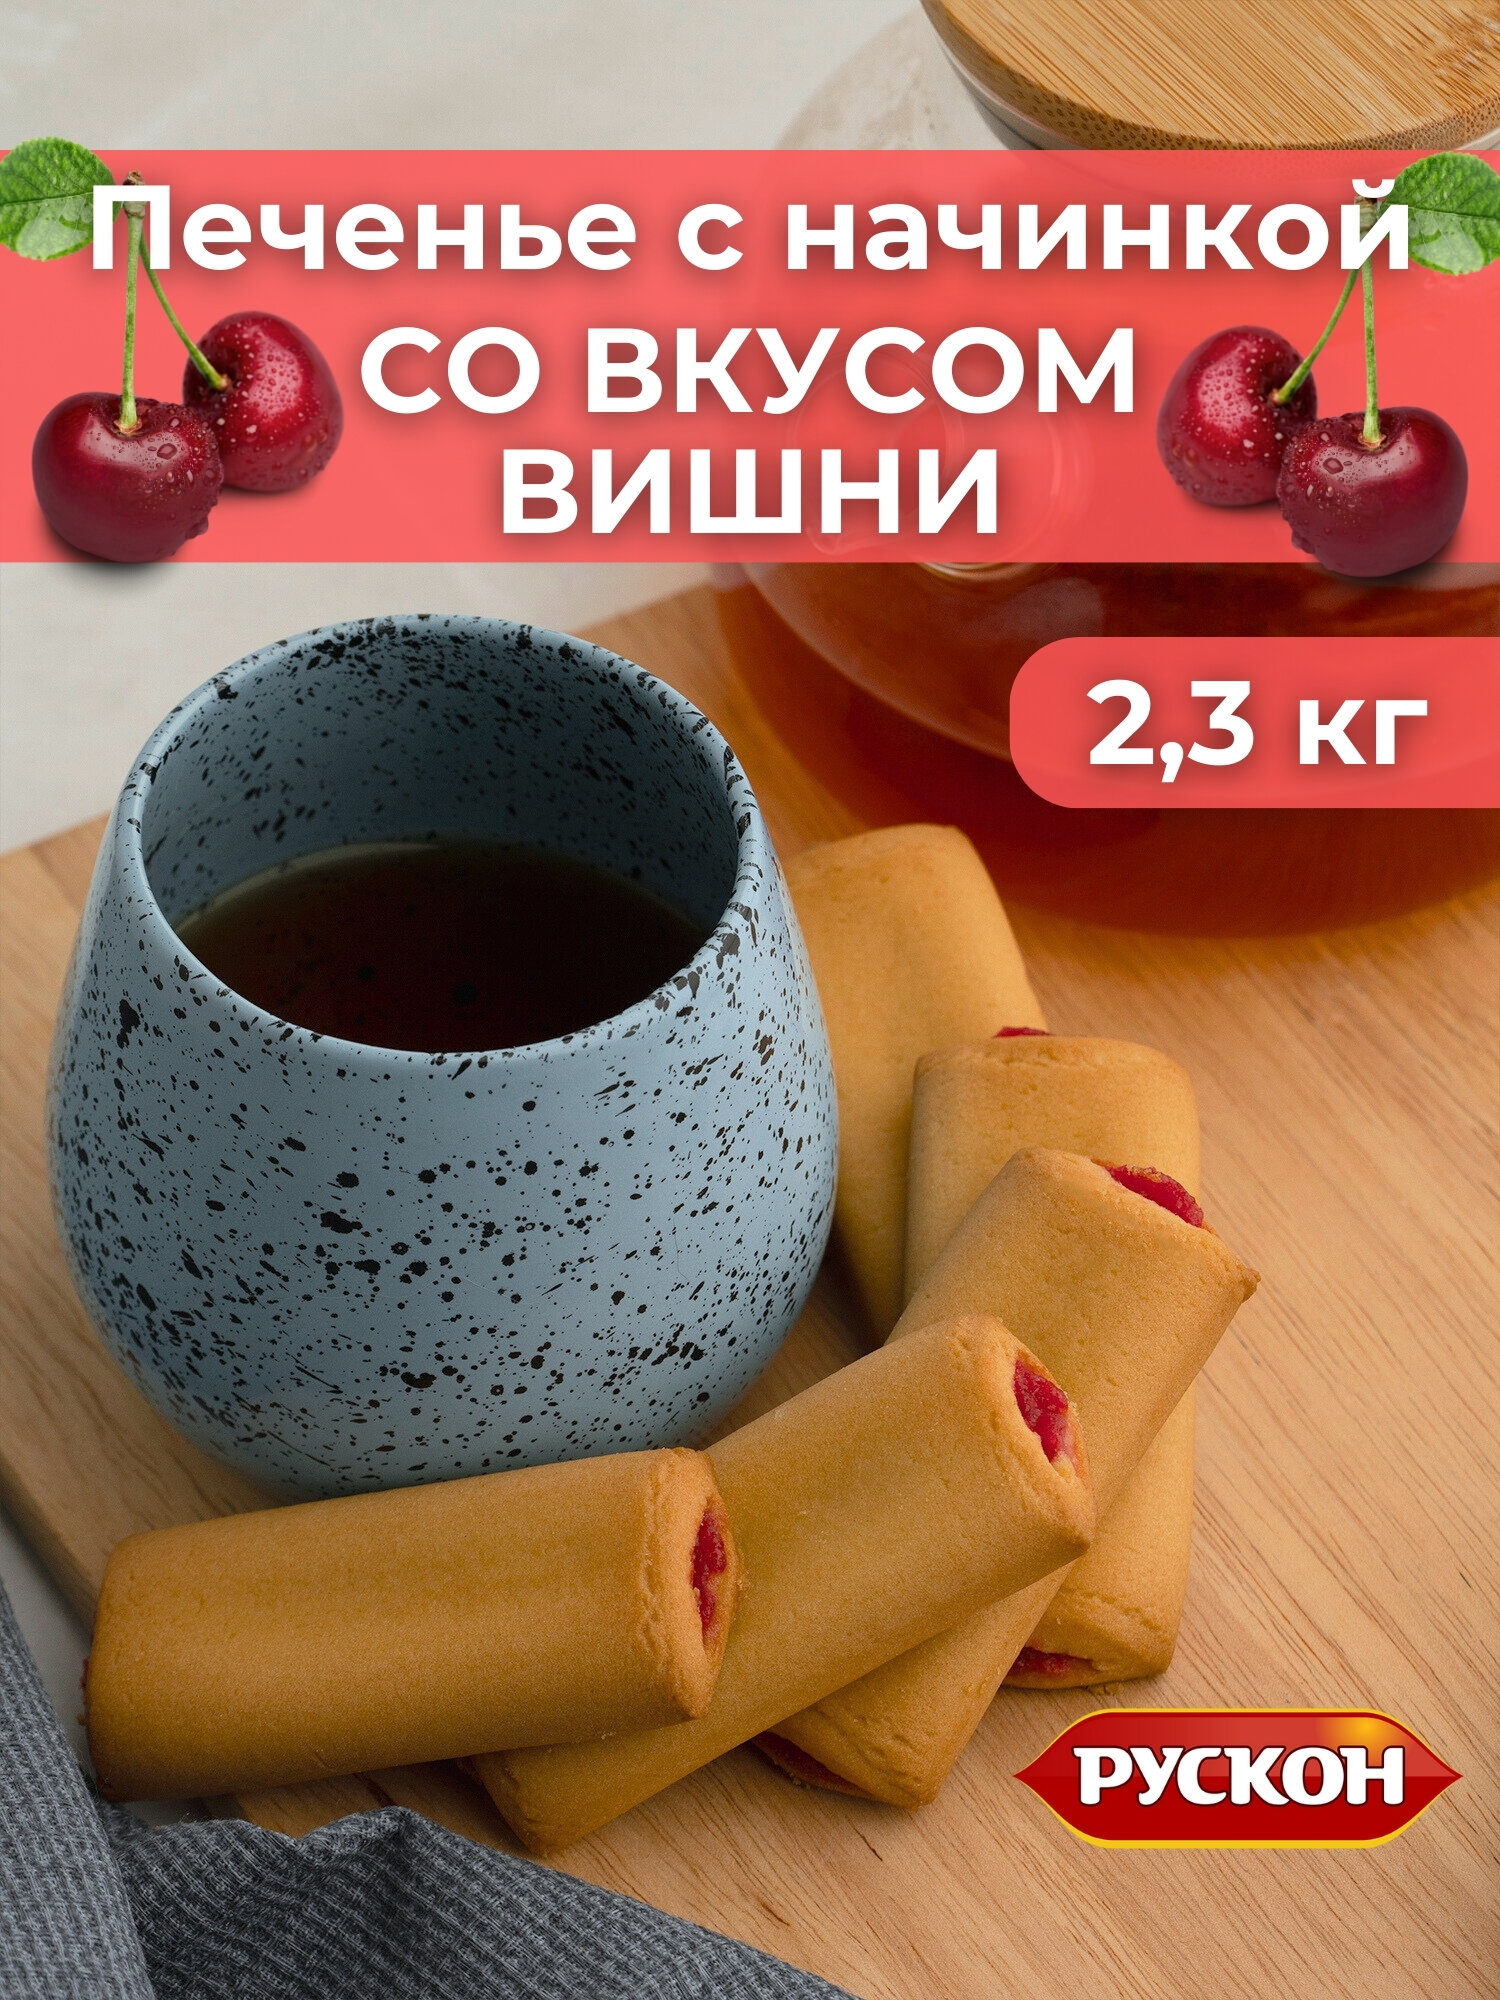 Печенье палочки с начинкой со вкусом вишни , 2,3 кг , рускон